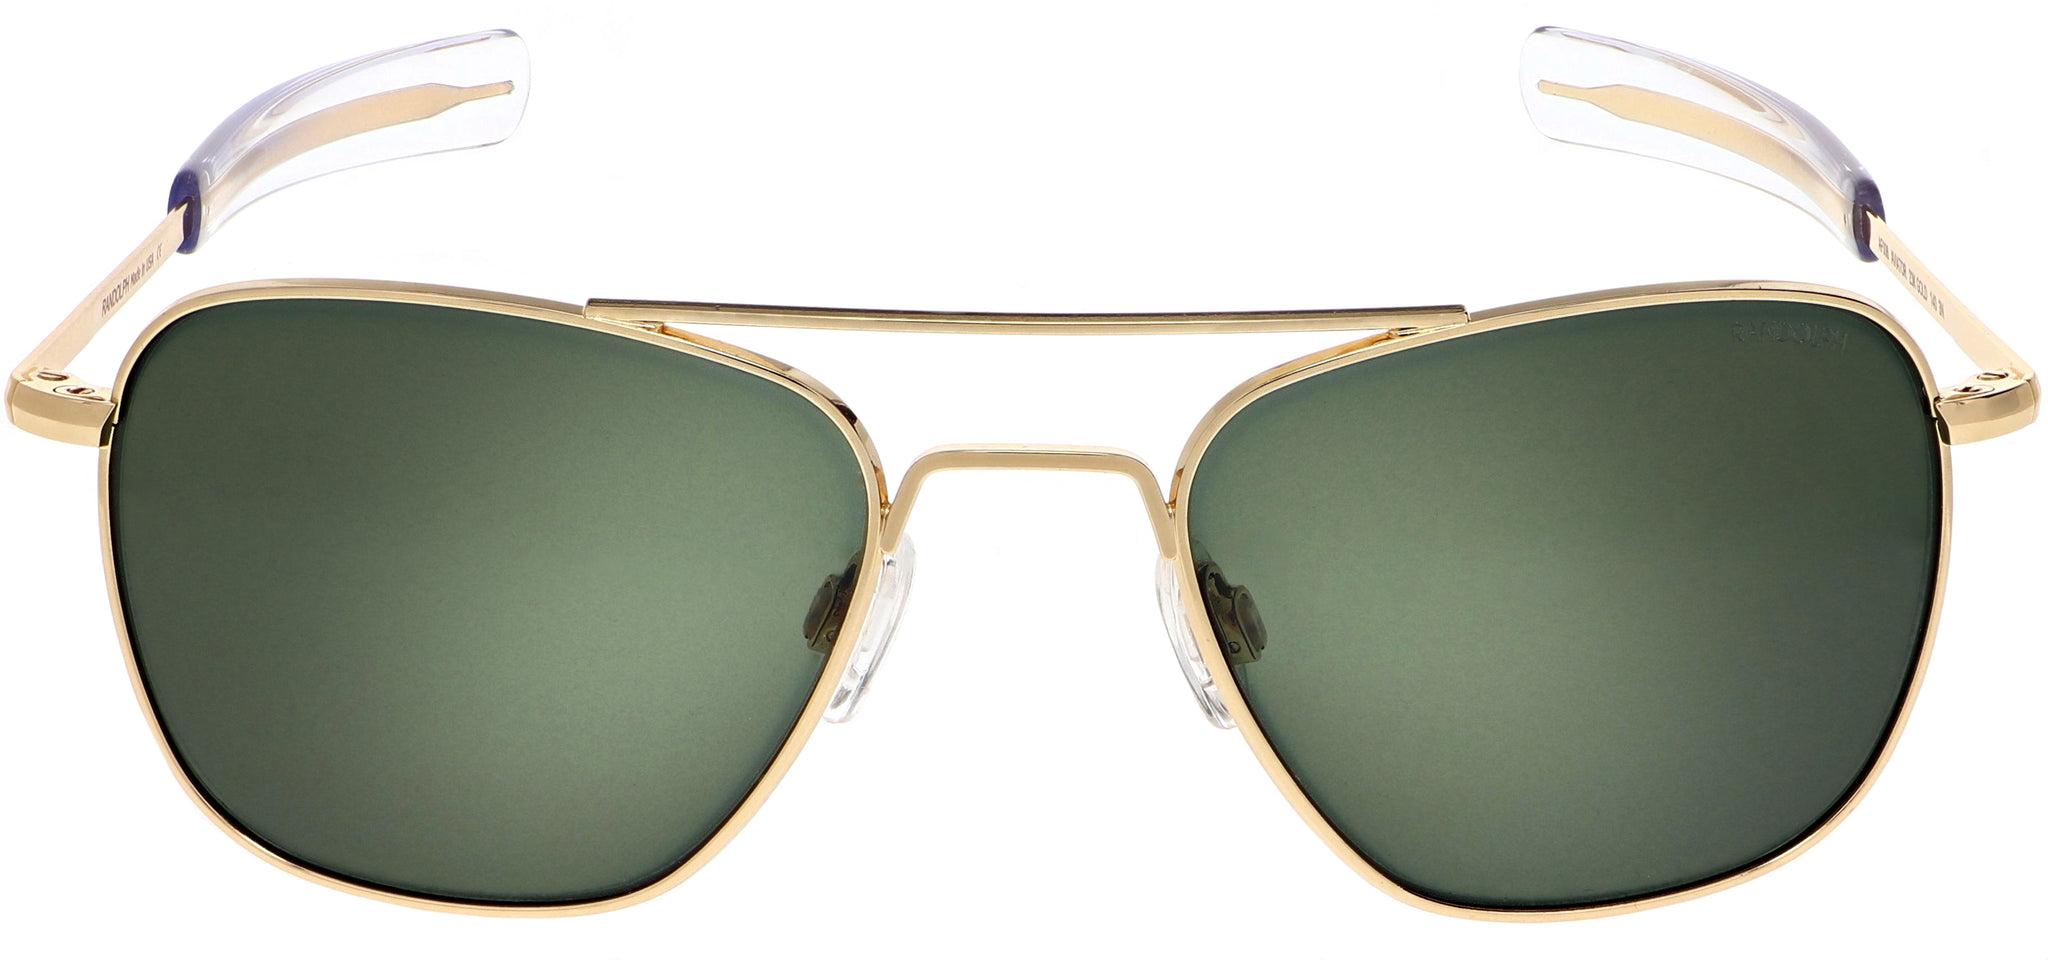 Misforstå klarhed tidligste Randolph Aviator Sunglasses AF056, 23K Gold with AGX Green Lenses - Flight  Sunglasses